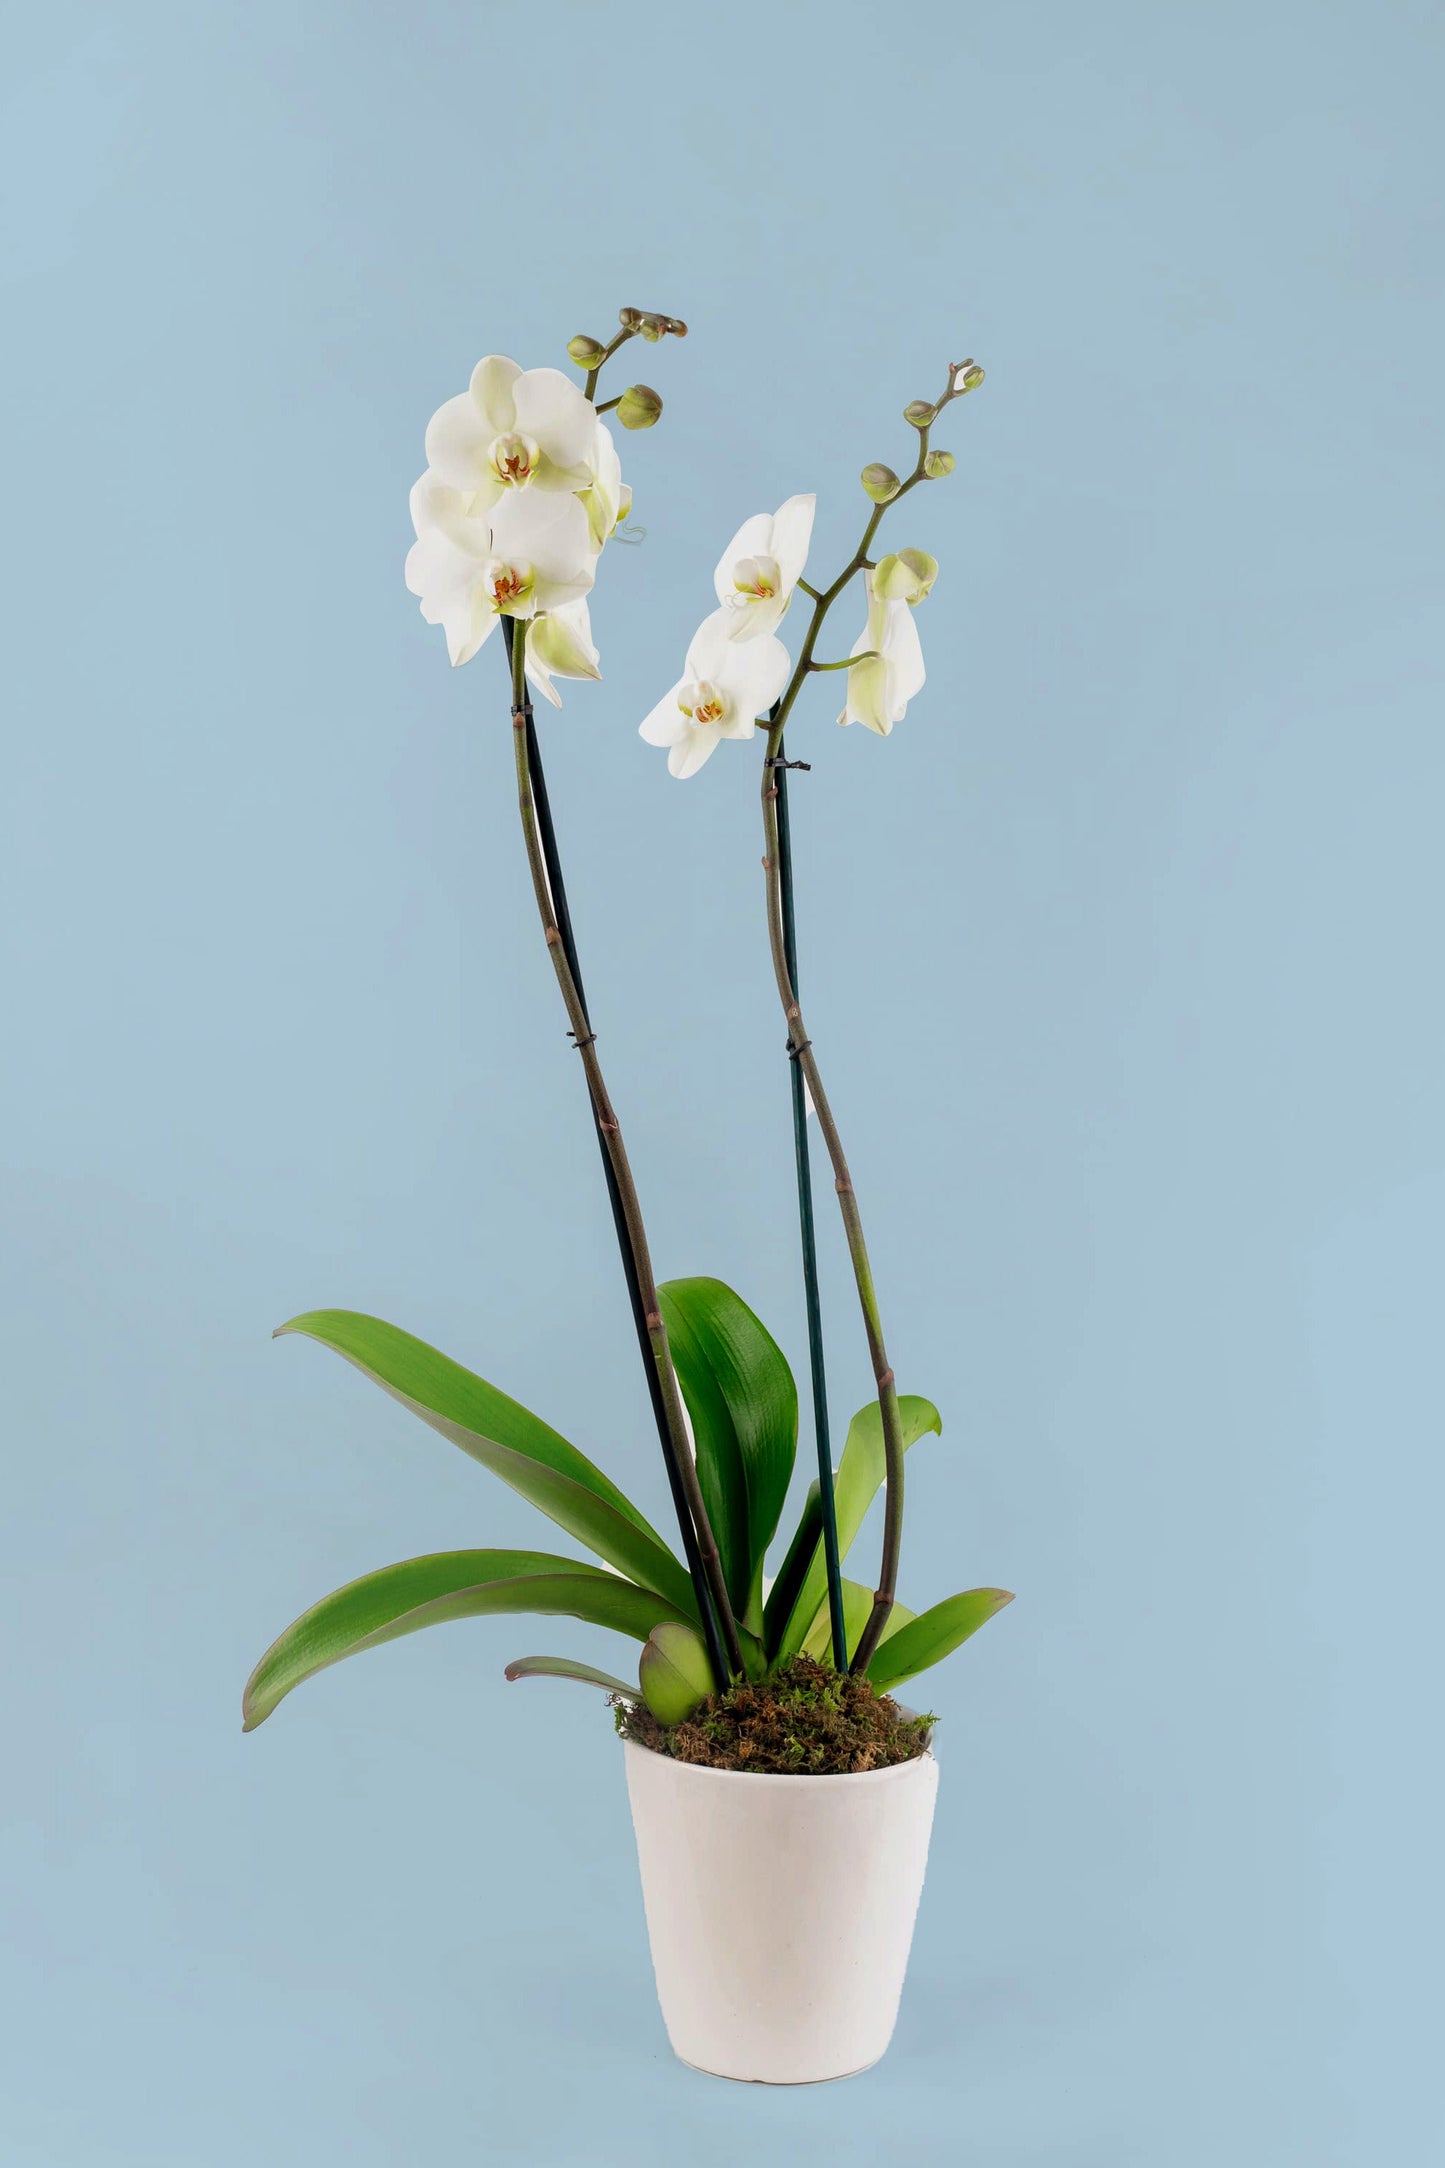 Remedios Varo Blanco Planta - Orquídea Blanca